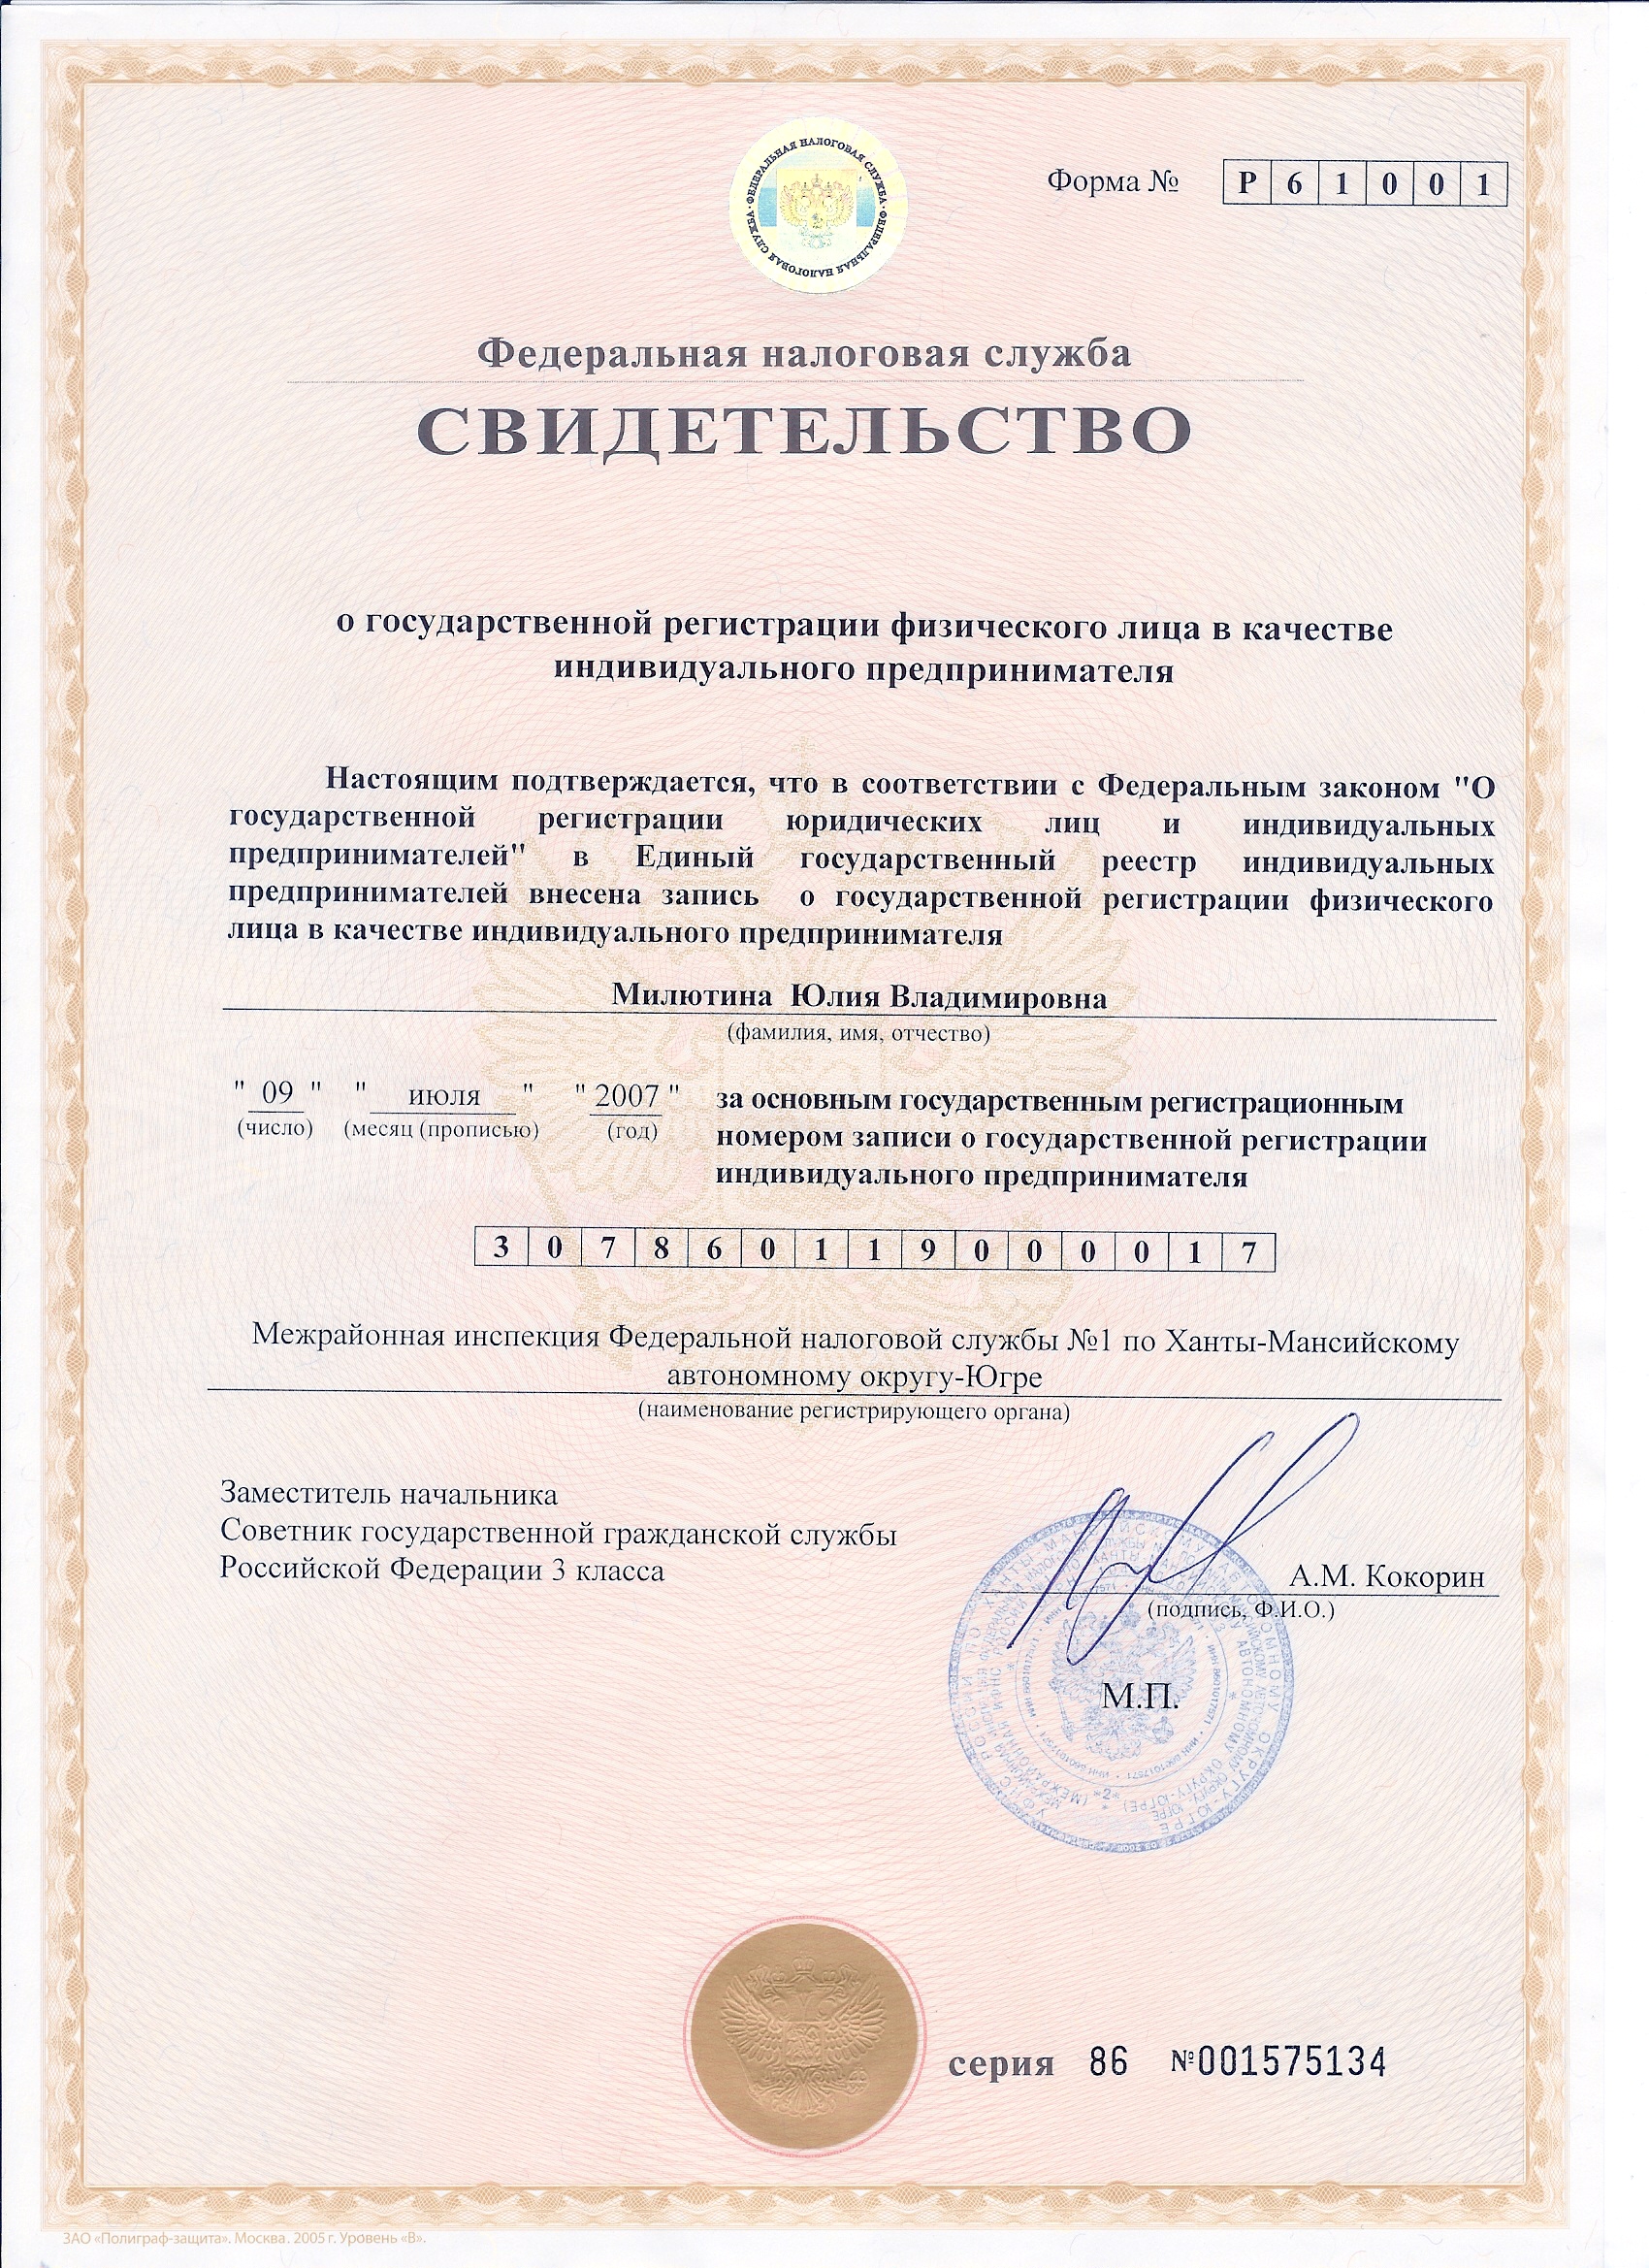 Свидетельство о государственной регистрации физического лица в
качестве
индивидуального предпринимателя серия 86 № 001575134 от 09 июля 2007
года. Выдано Межрайонной инспекцией Федеральной налоговой службы № 1 по
Ханты-Мансийскому автономному округу-Югре.